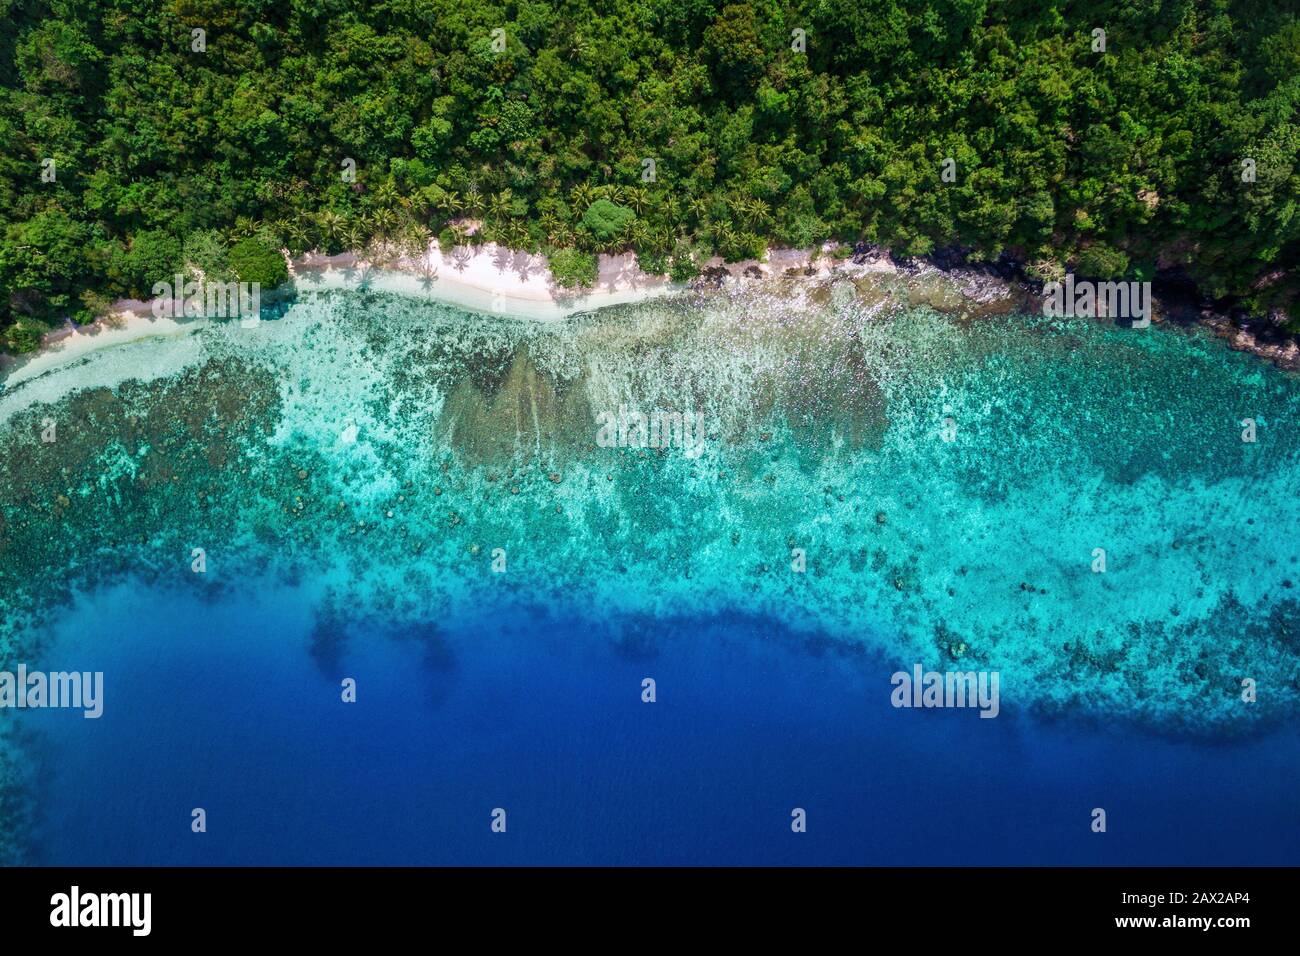 Paradiso tropicale dell'isola, vista aerea dall'alto sulle acque turchesi e la vegetazione lussureggiante da appartata spiaggia di sabbia bianca. Foto Stock